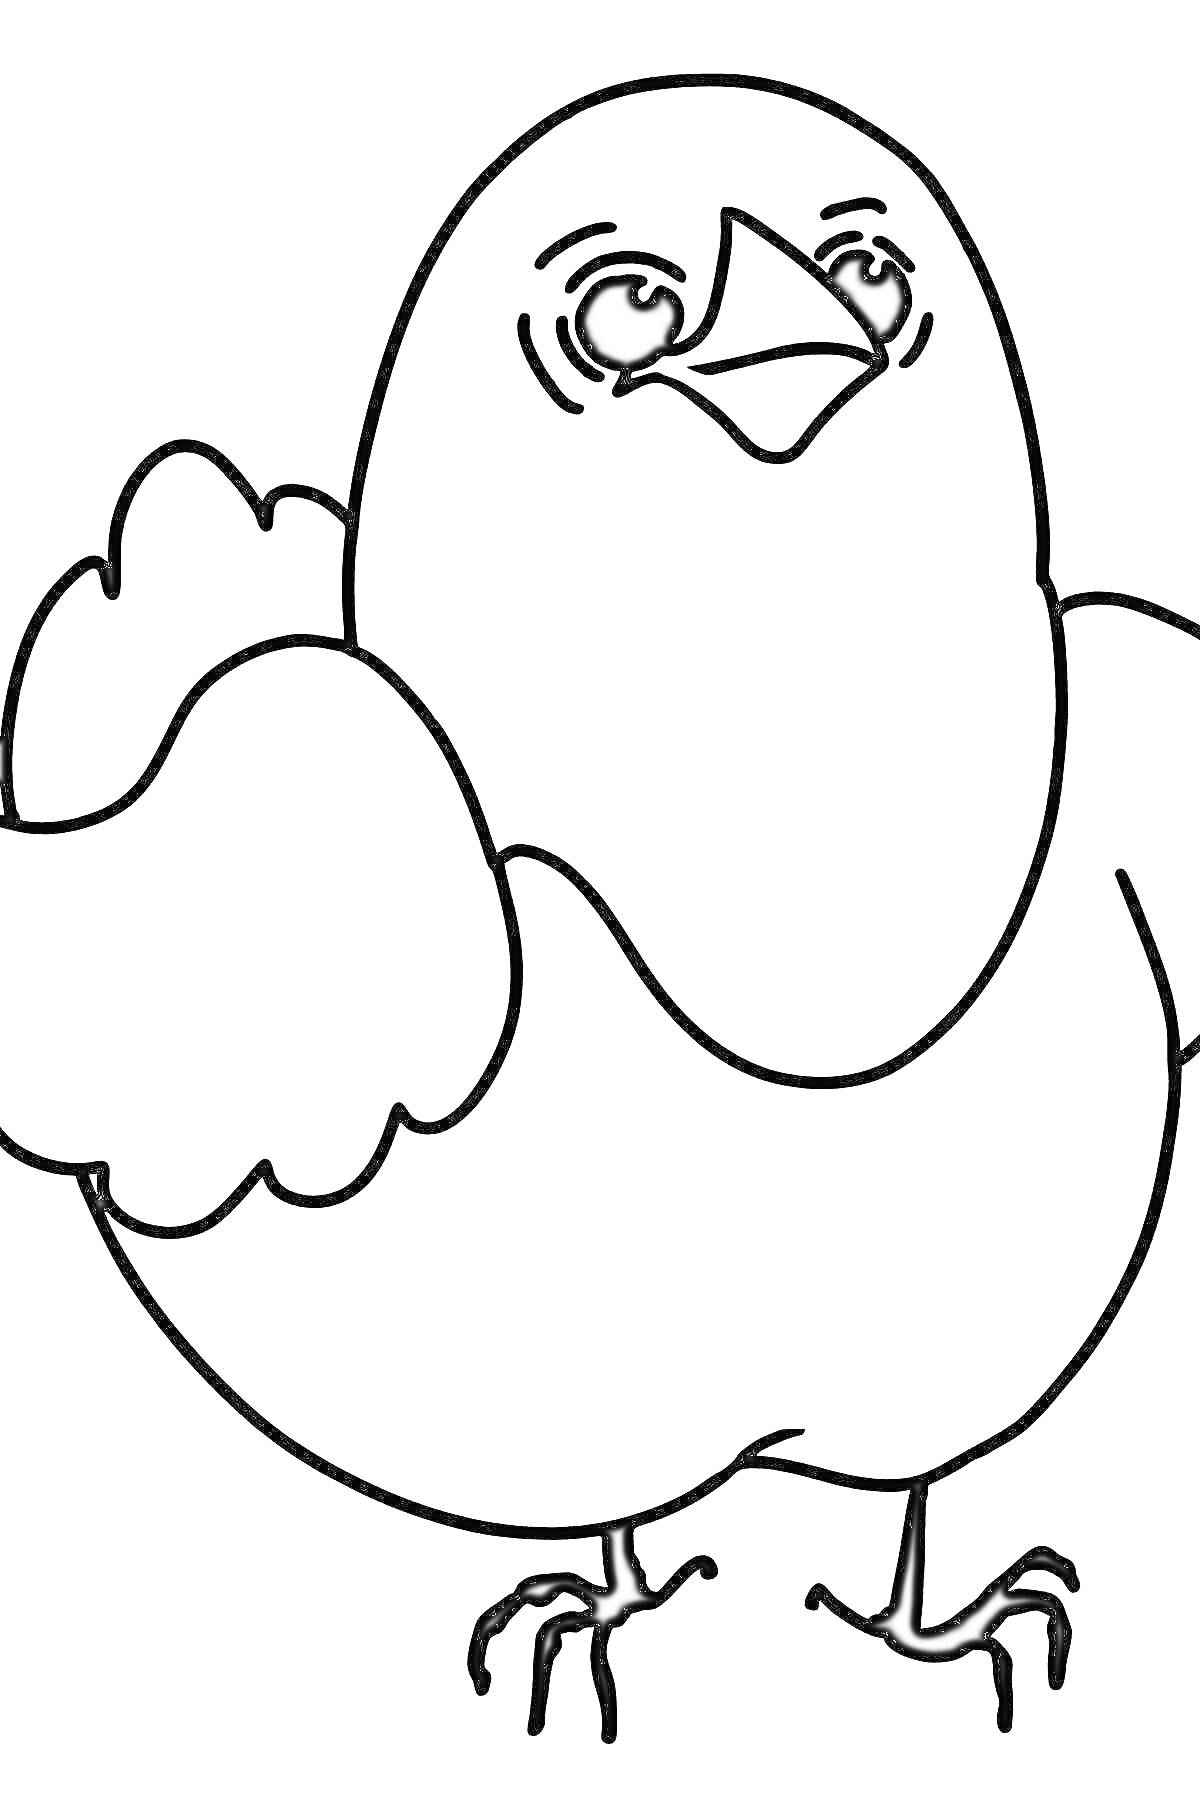 Раскраска Цыпленок с крыльями и лапками